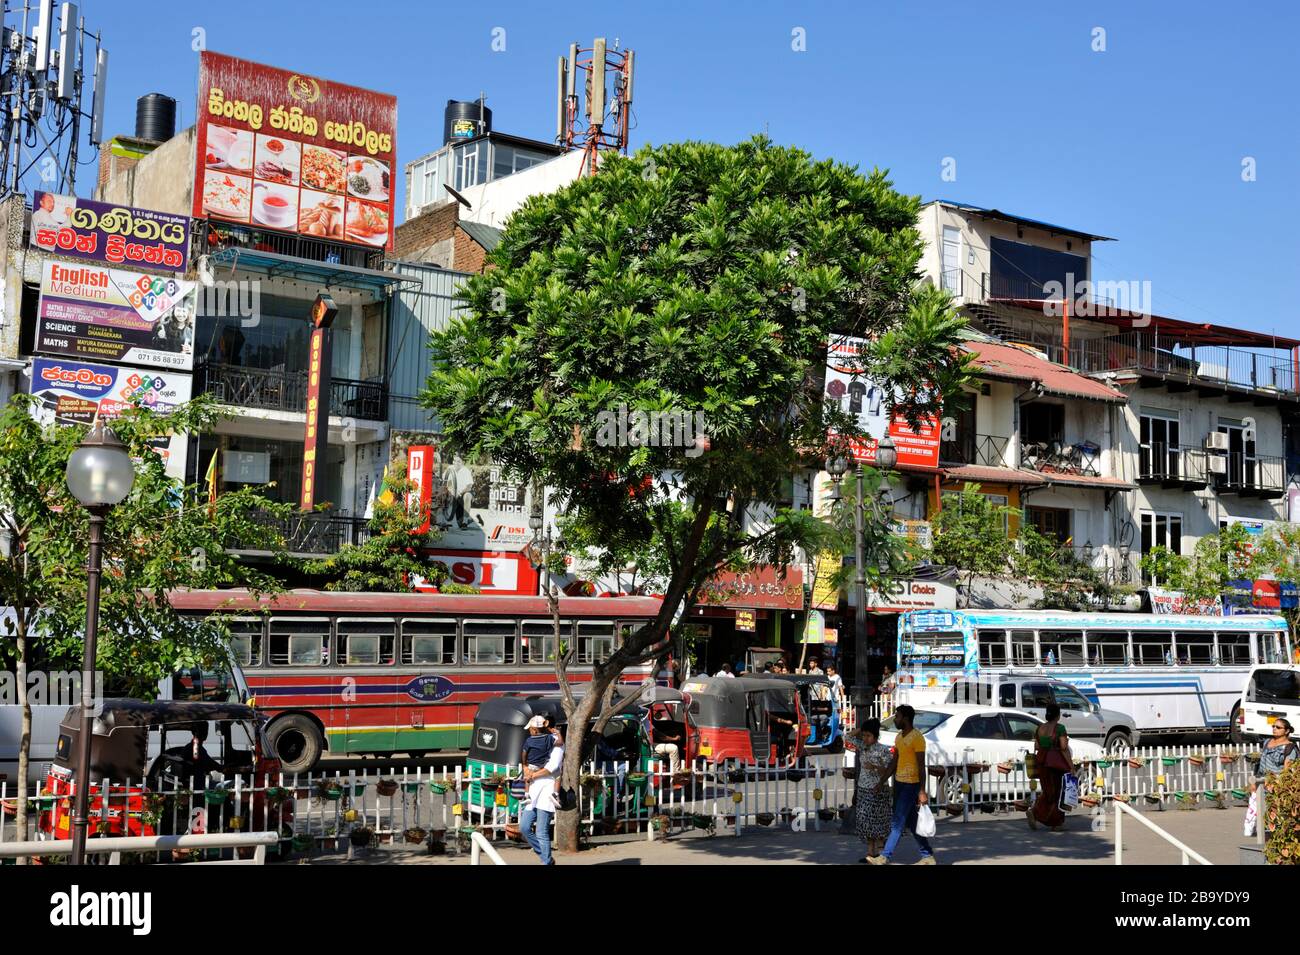 Sri Lanka, Kandy, old town street Stock Photo